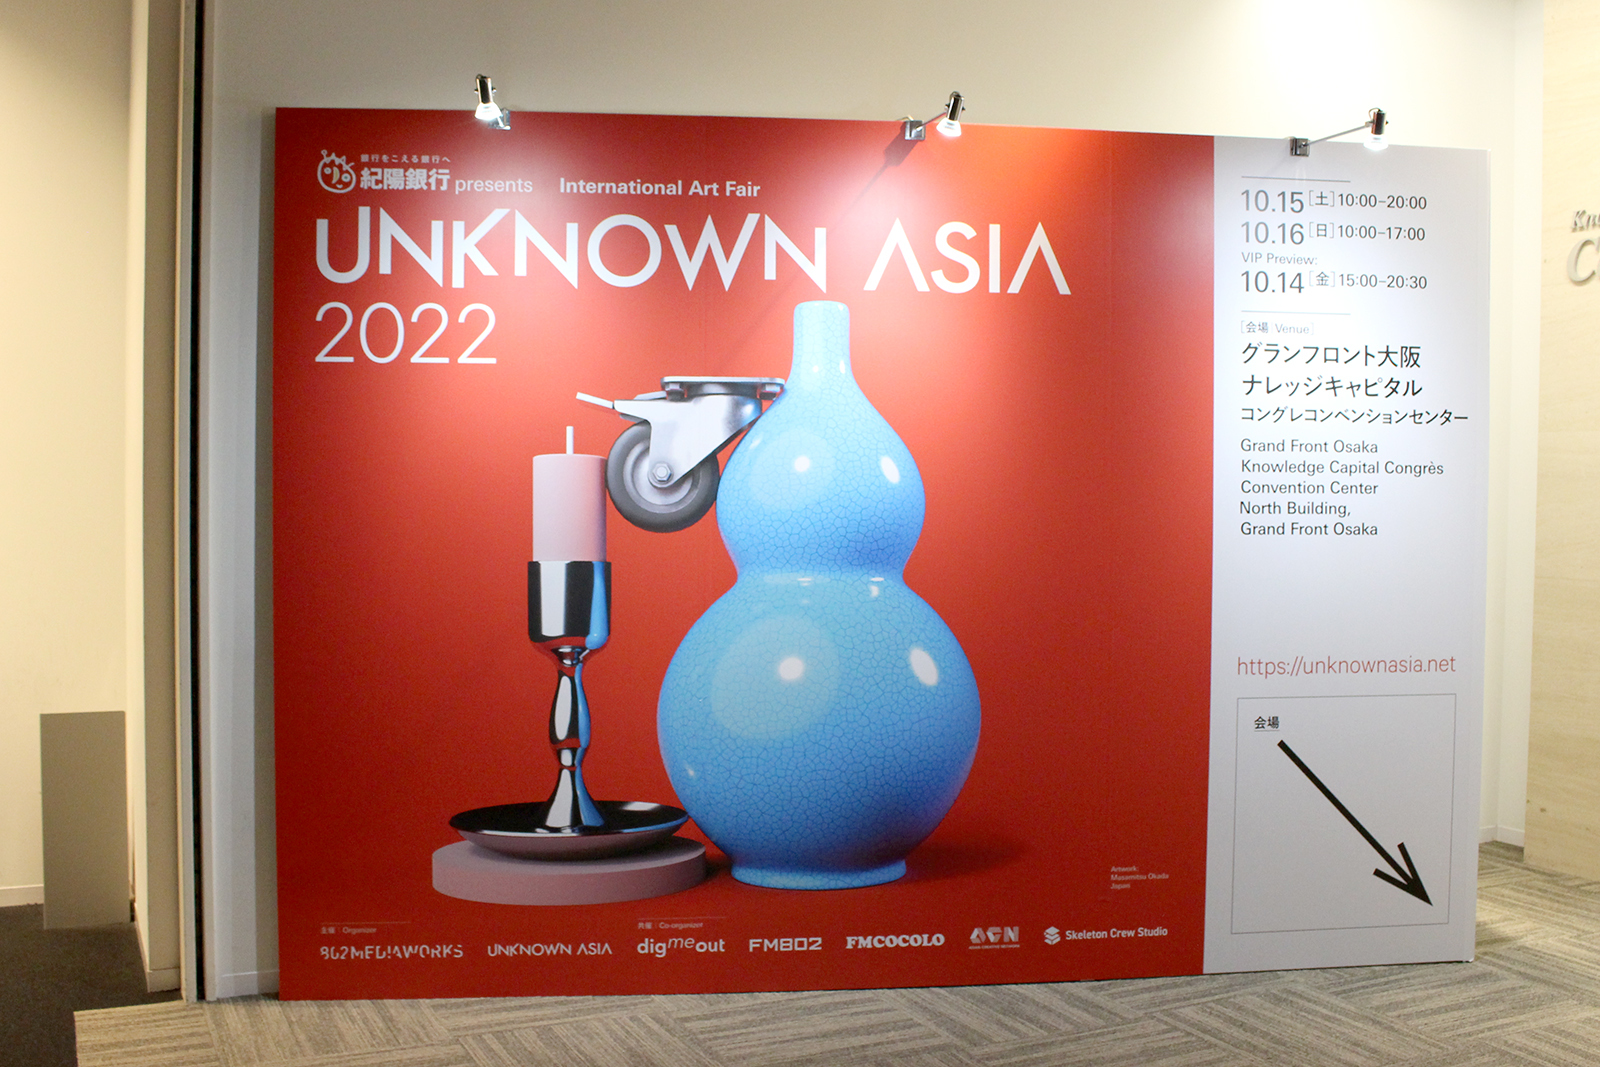 紀陽銀行presents UNKNOWN ASIA 2022